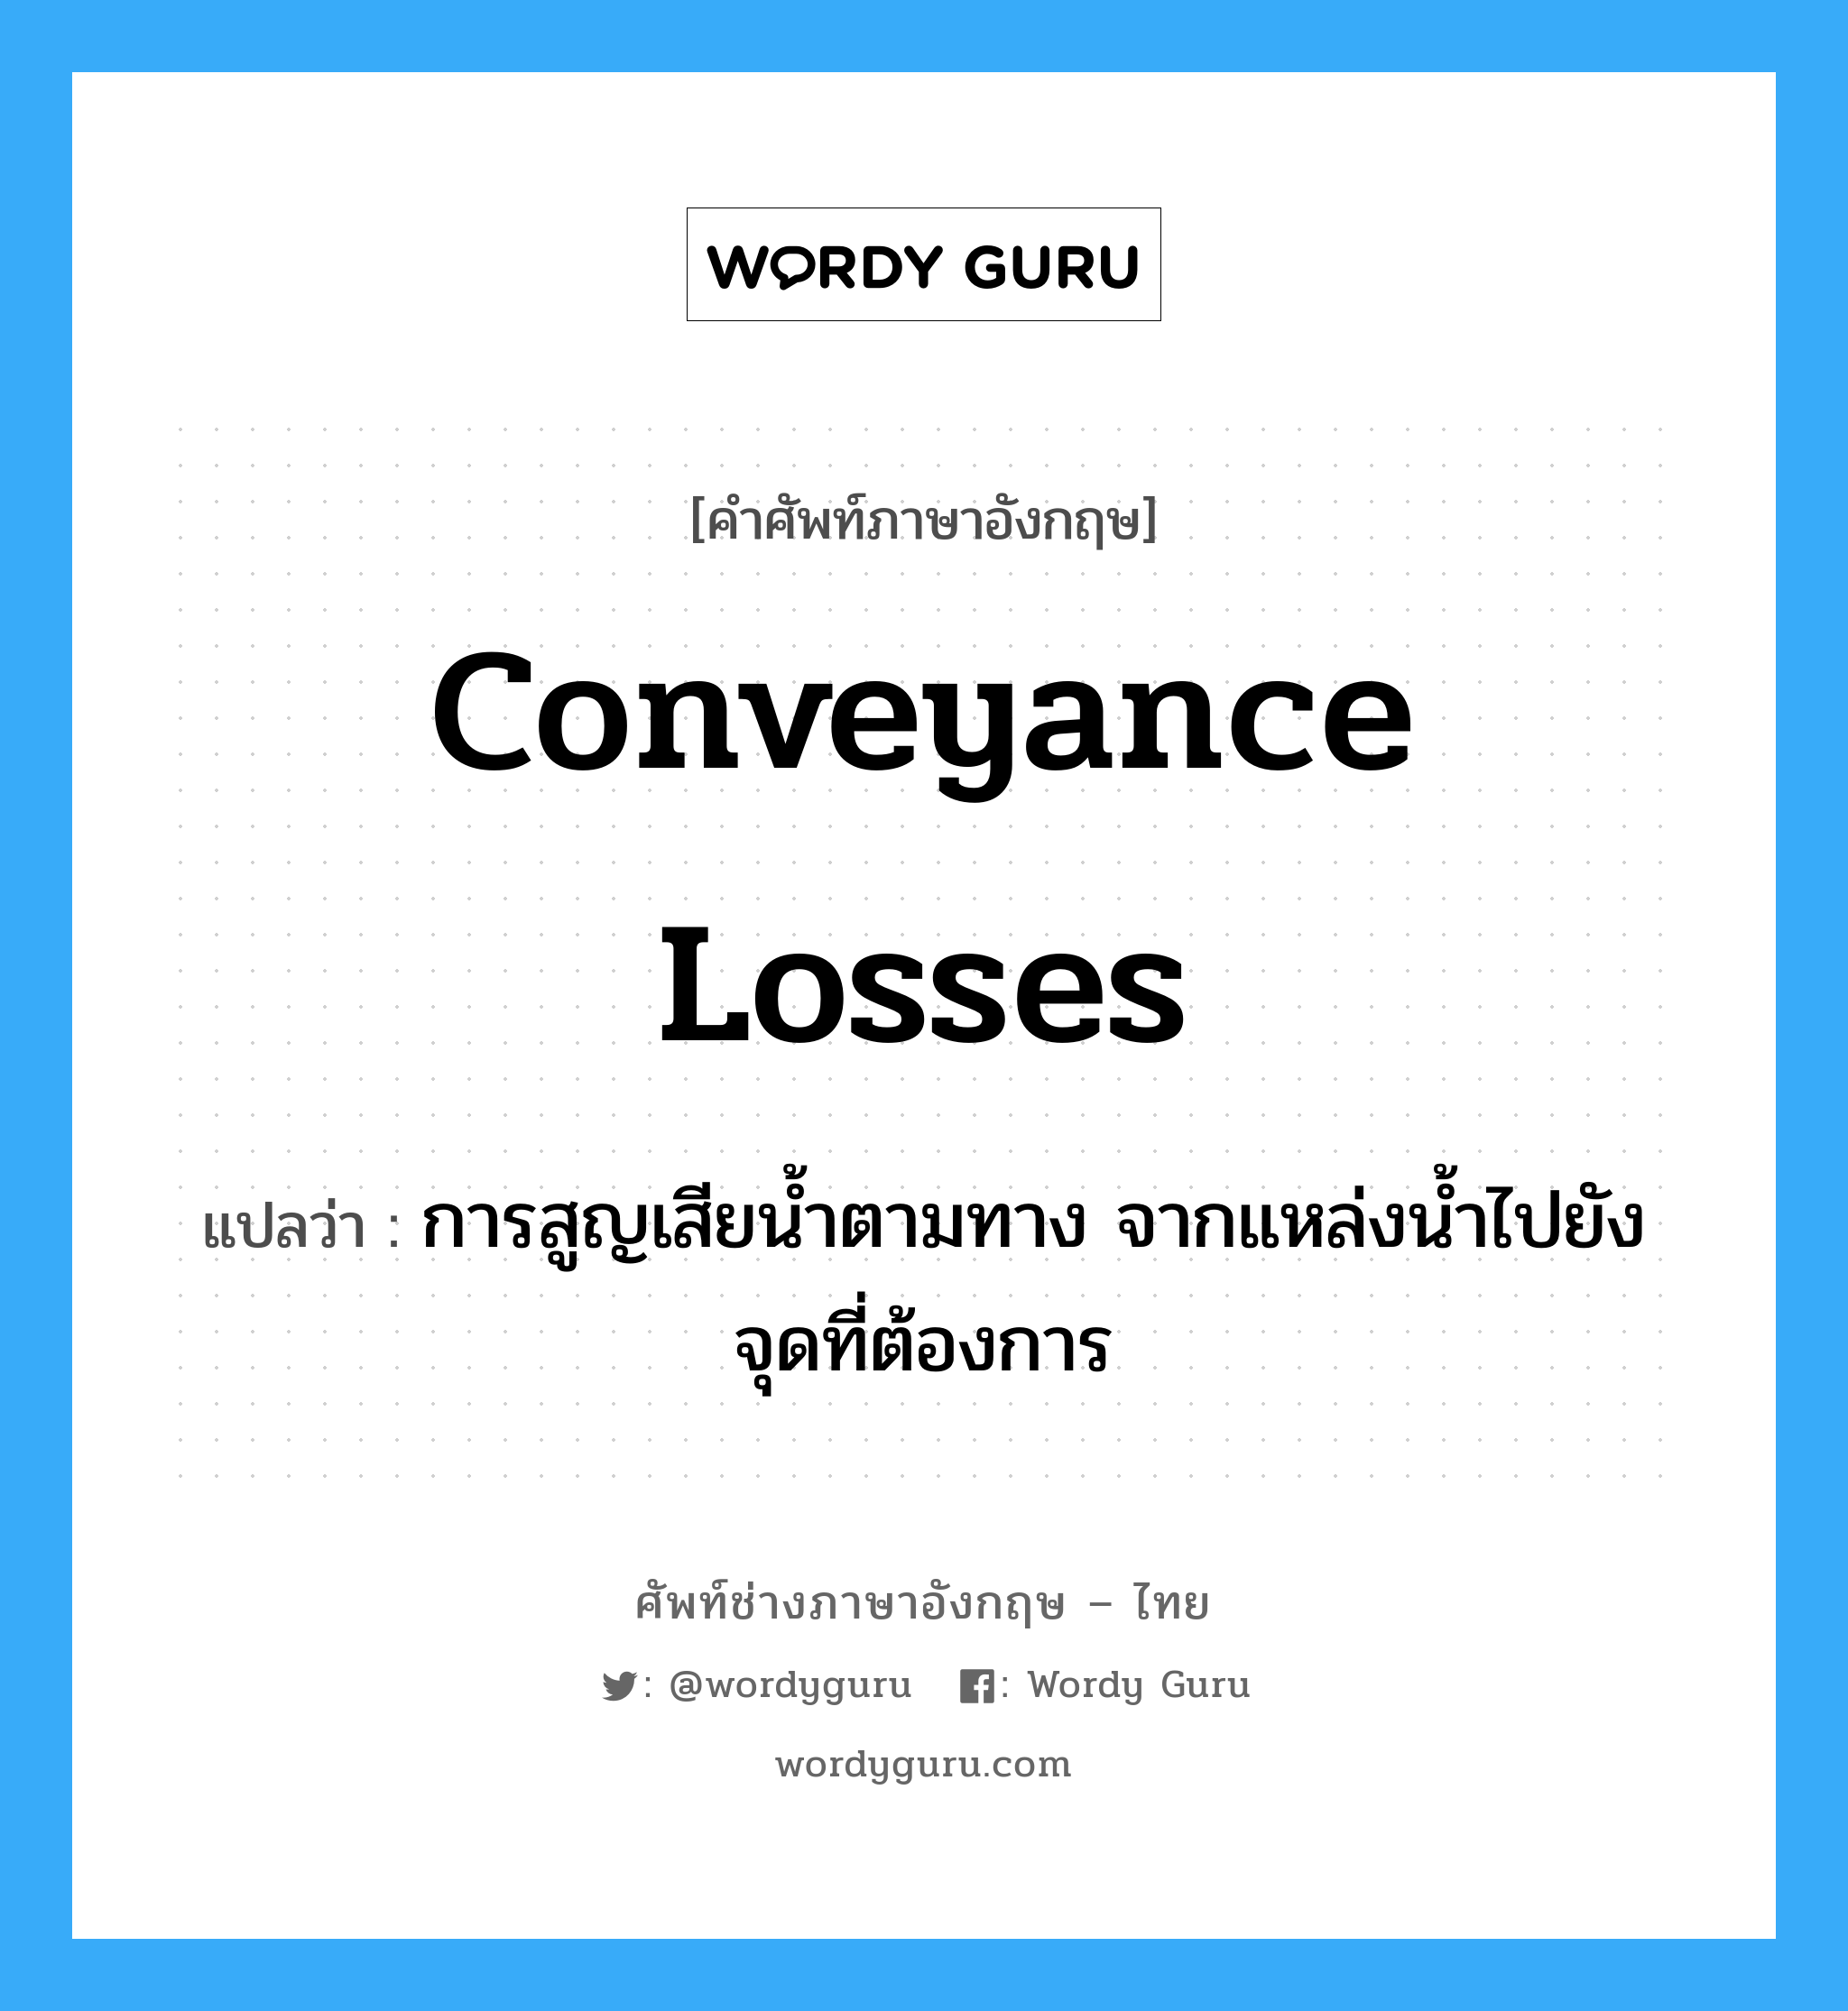 conveyance losses แปลว่า?, คำศัพท์ช่างภาษาอังกฤษ - ไทย conveyance losses คำศัพท์ภาษาอังกฤษ conveyance losses แปลว่า การสูญเสียน้ำตามทาง จากแหล่งน้ำไปยังจุดที่ต้องการ